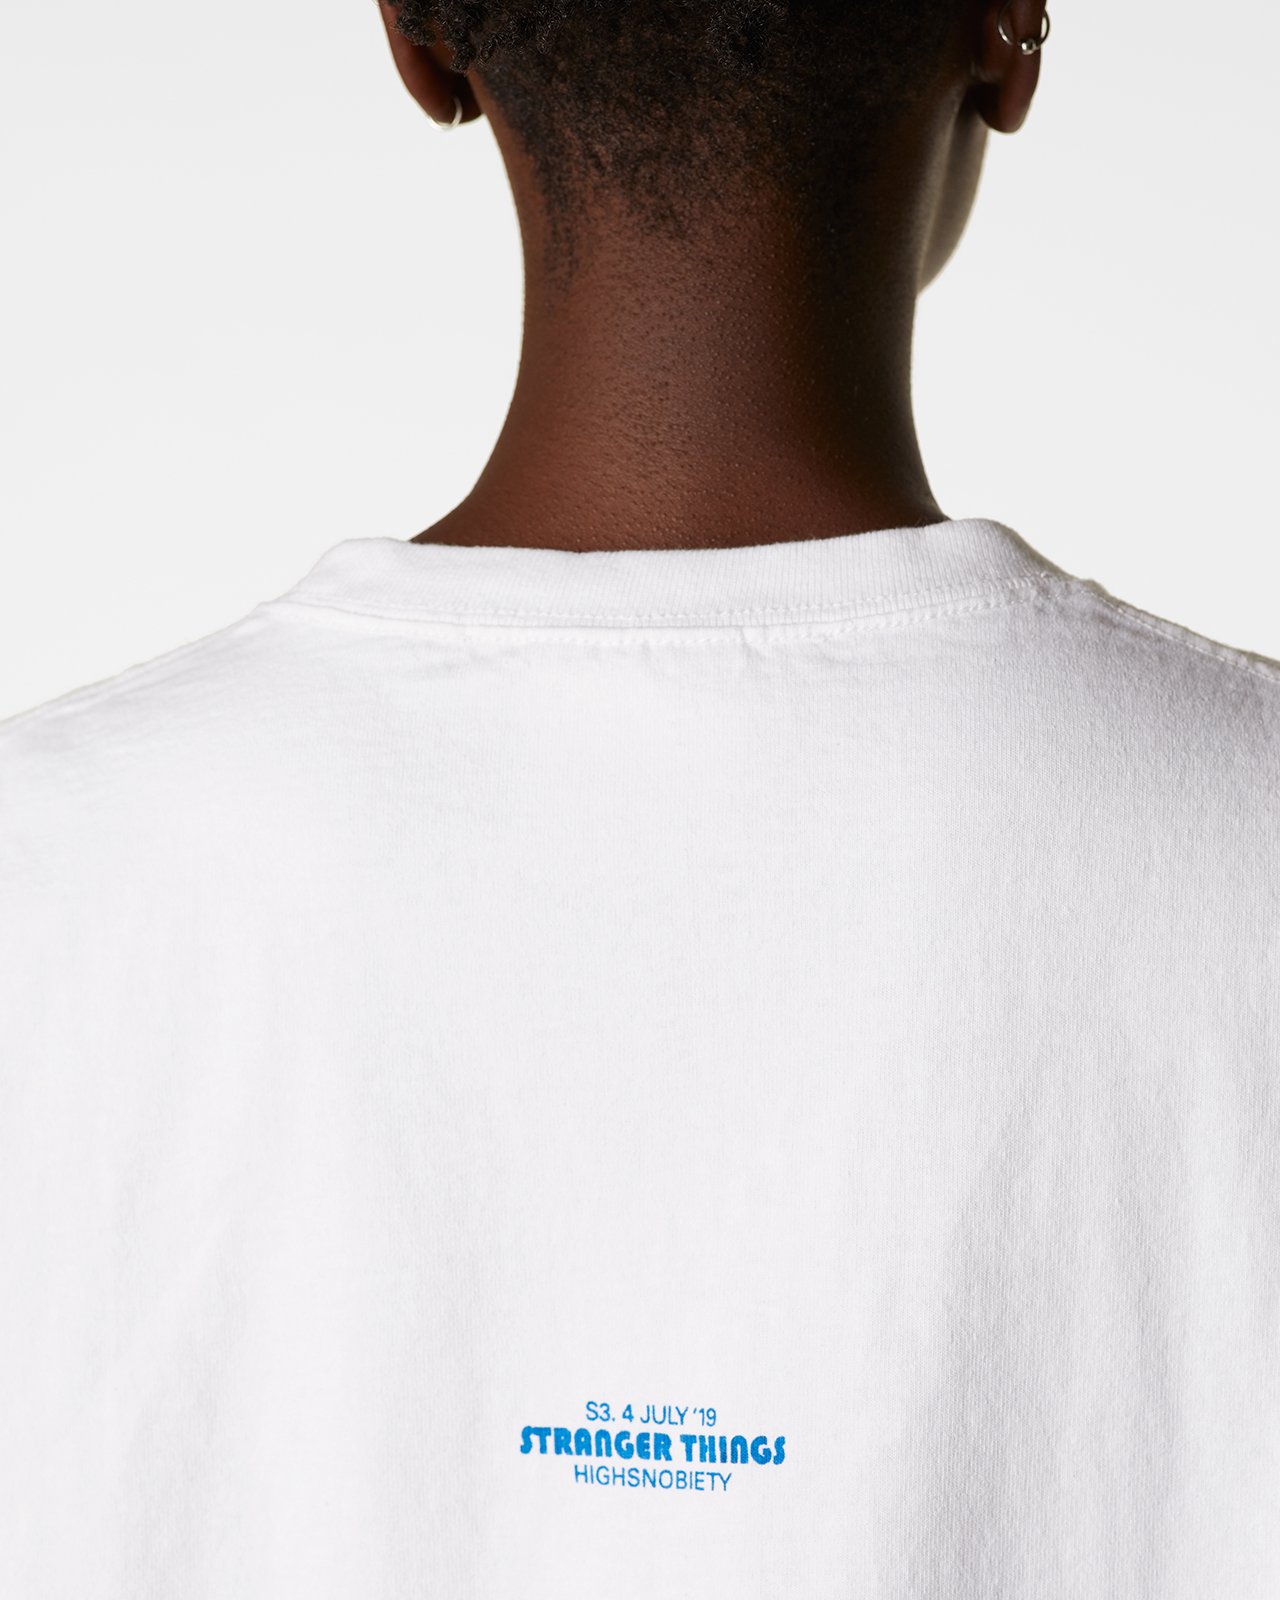 Highsnobiety - Stranger Things Ahoy T-Shirt - Clothing - White - Image 7